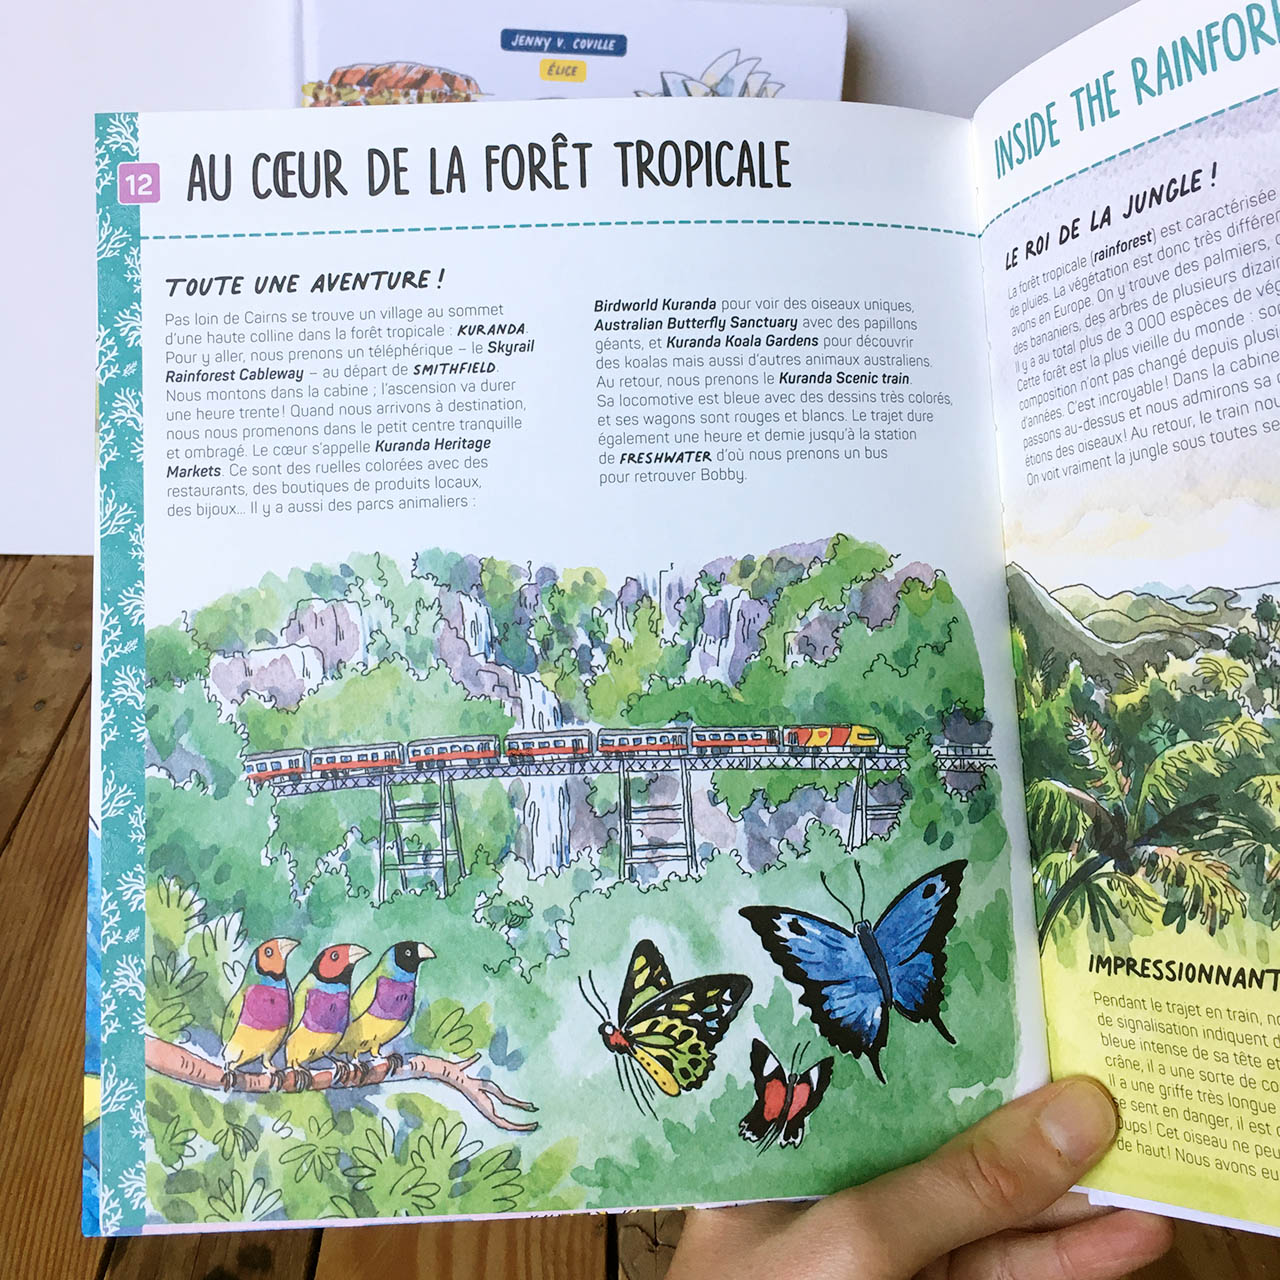 page du livre bienvenue en Australie montrant une illustration de la forpet tropicale avec des oiseaux et papillon colorés, et le train rouge de Cairns en arrière plan